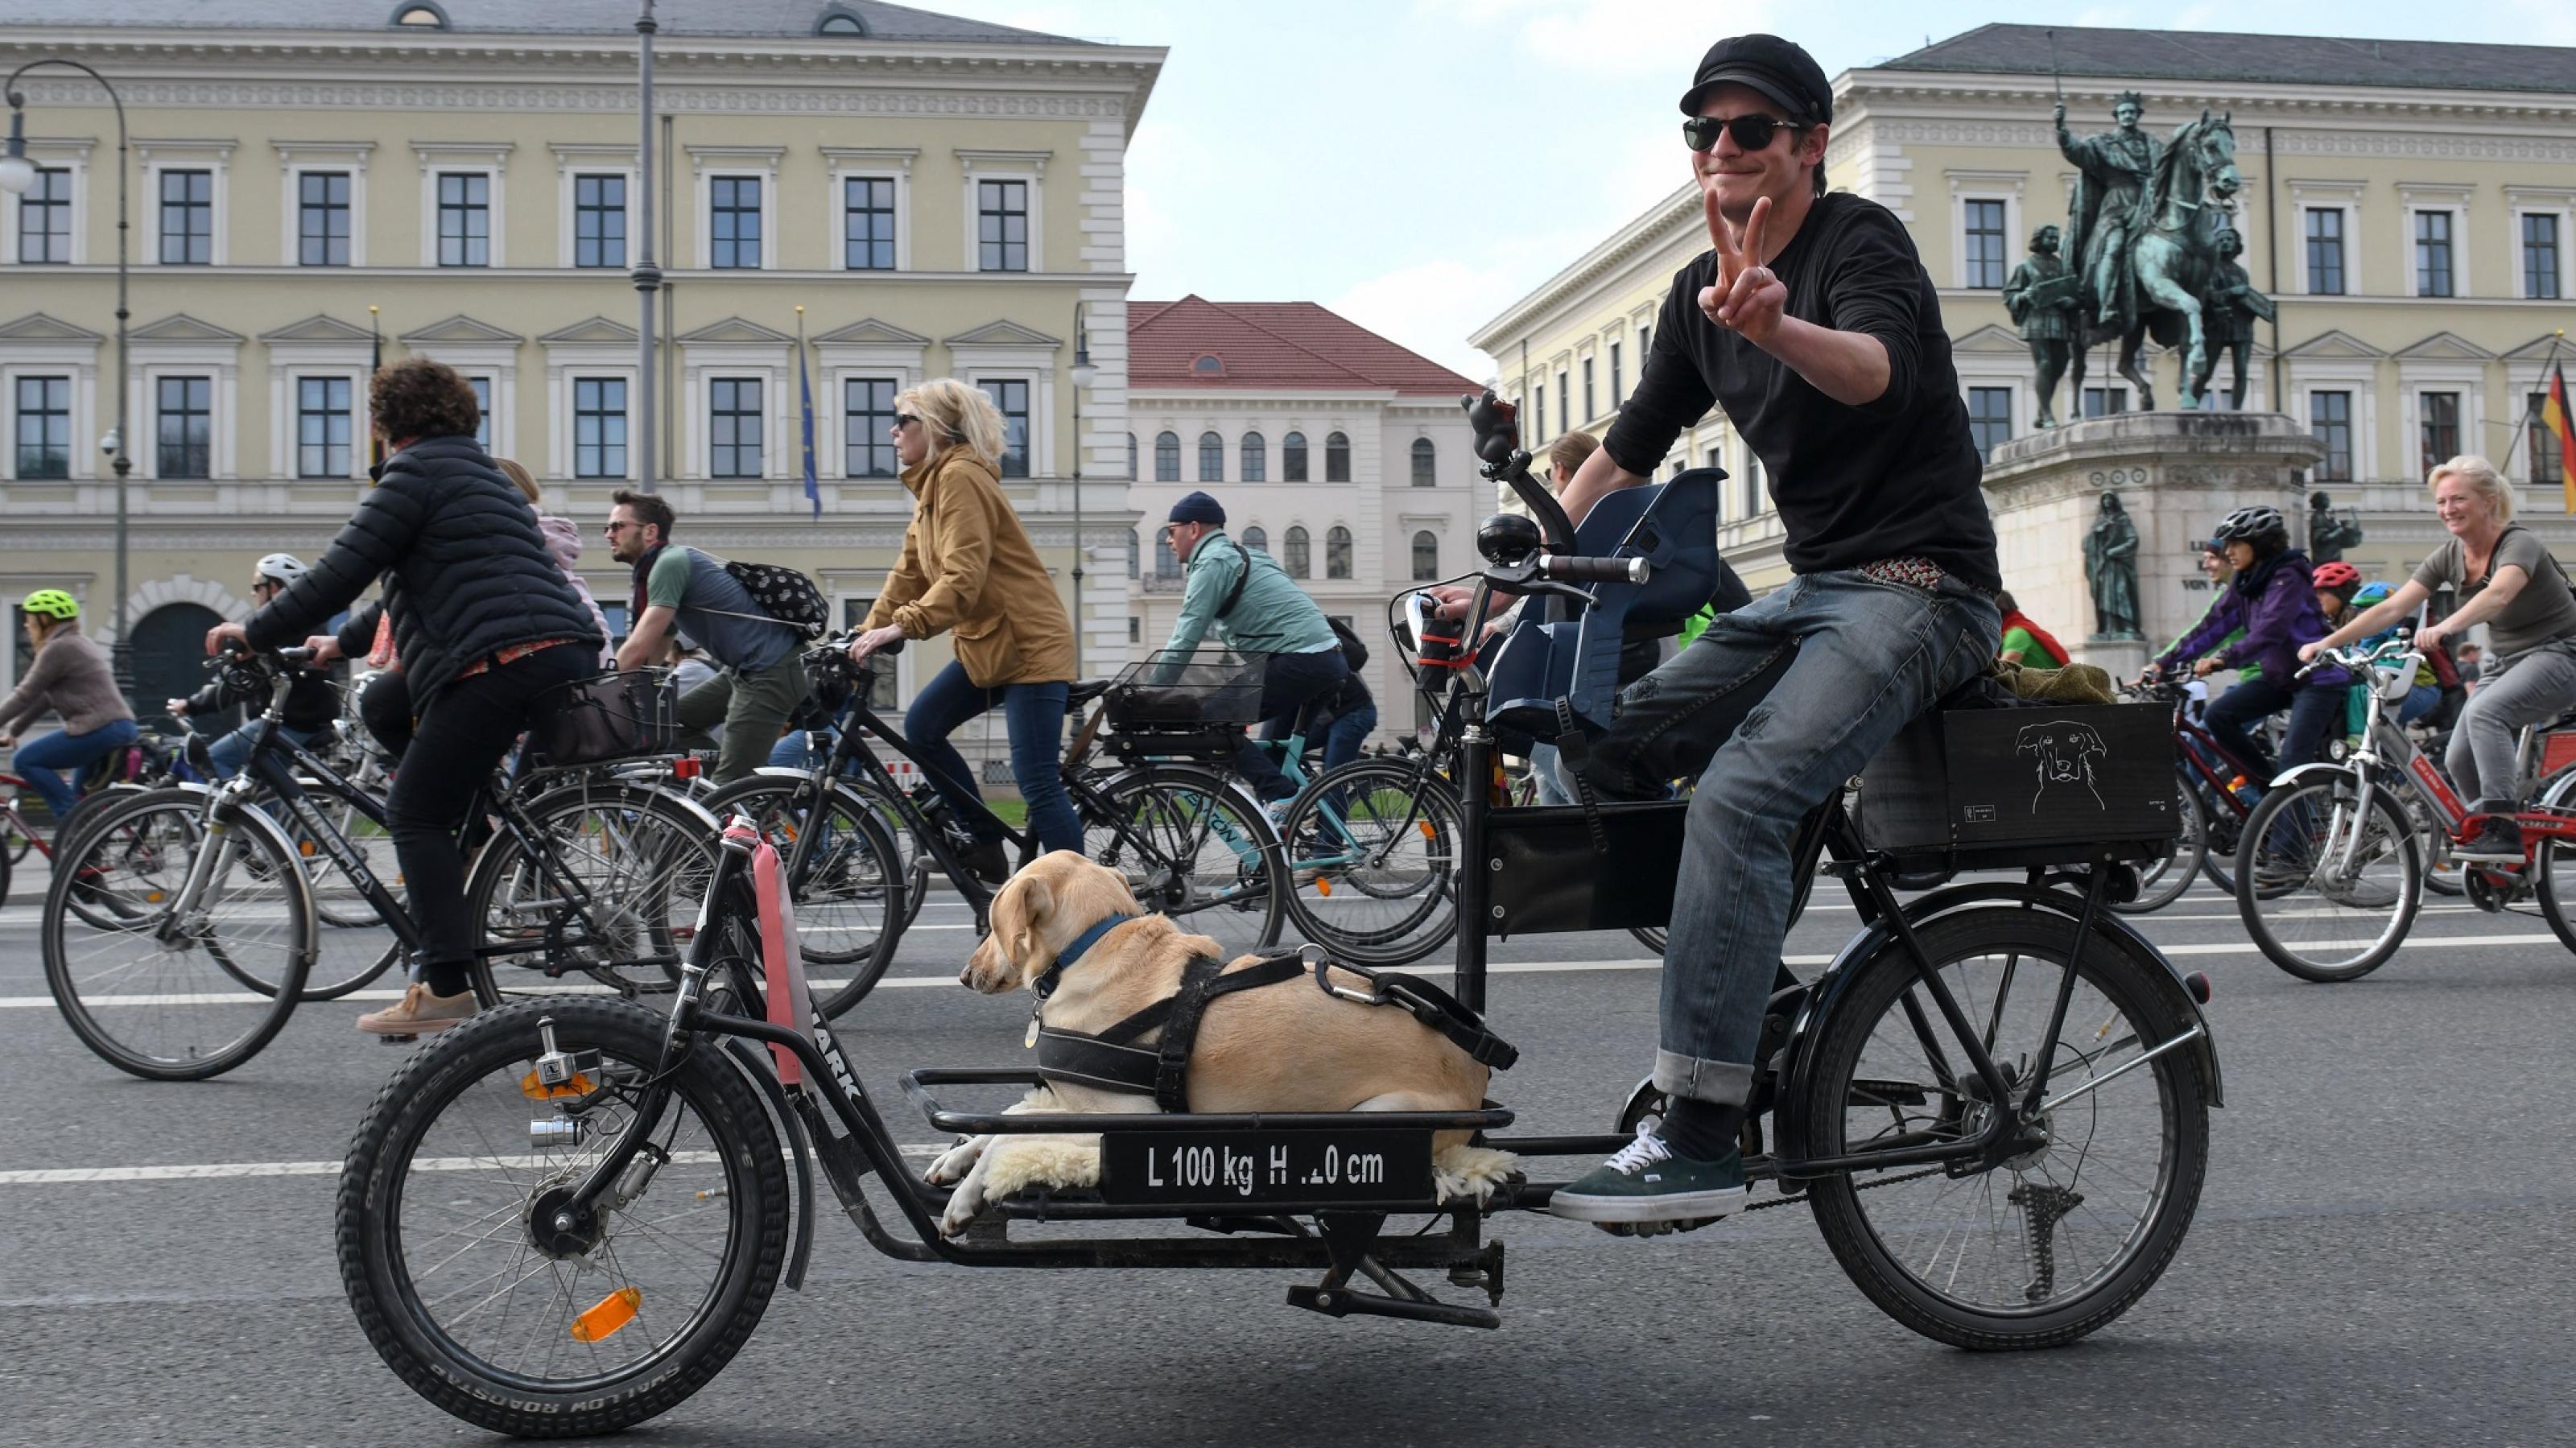 Ein Teilnehmer bei einer Fahrraddemo in München. Auf seinem Lastenrad liegt ein Hund.